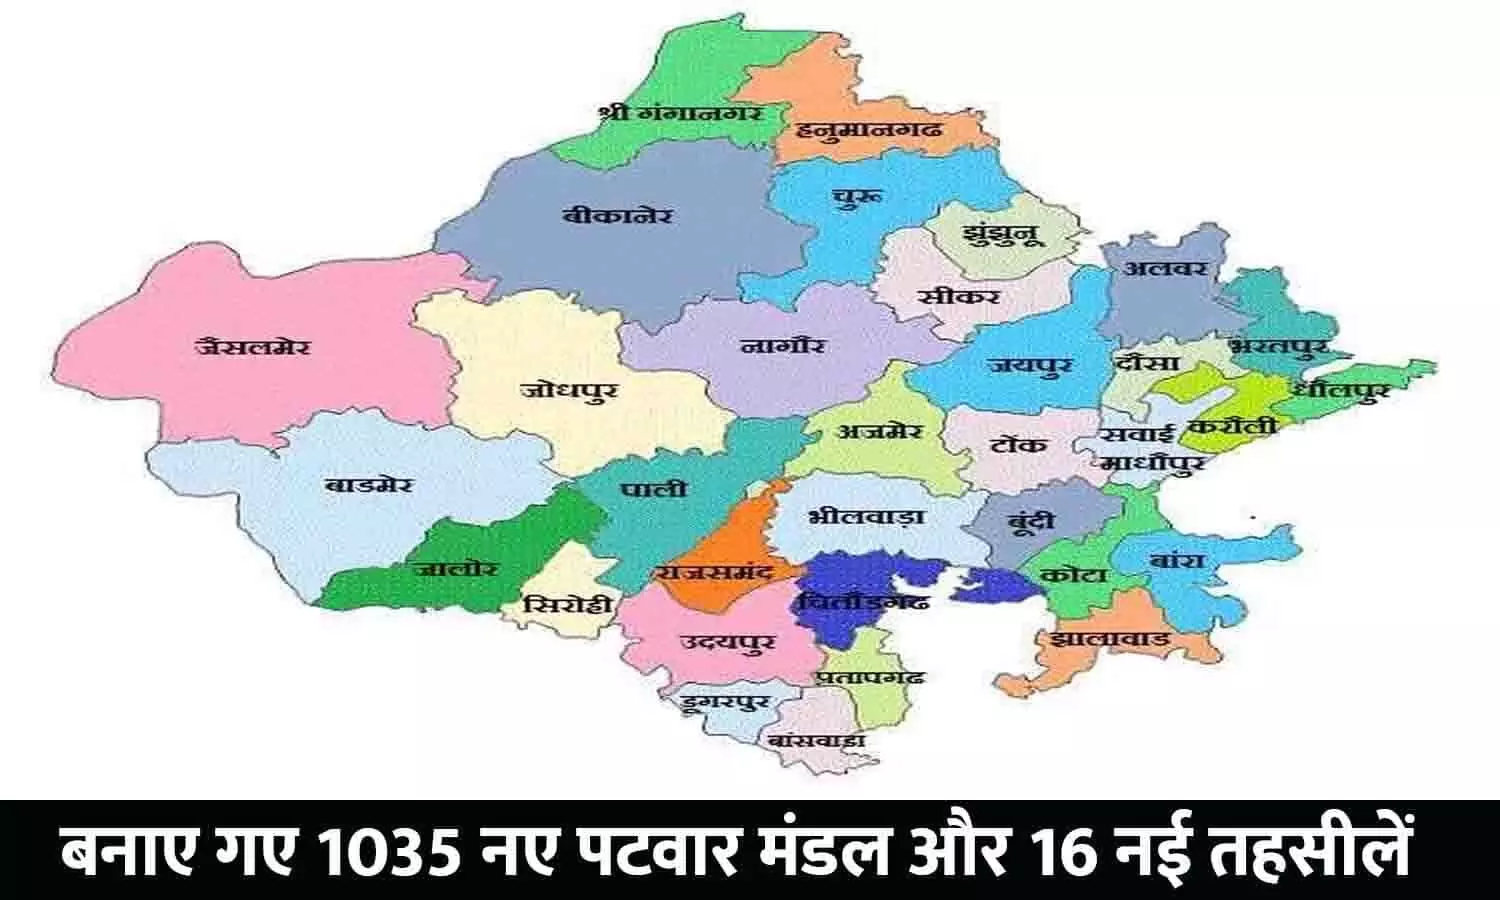 New Tehsil Patwar Mandal: बड़ा ऐलान! बनाए गए 1035 नए पटवार मंडल और 16 नई तहसीलें, अधिसूचना जारी, चेक करे आपके एरिया का नाम तो नहीं शामिल...